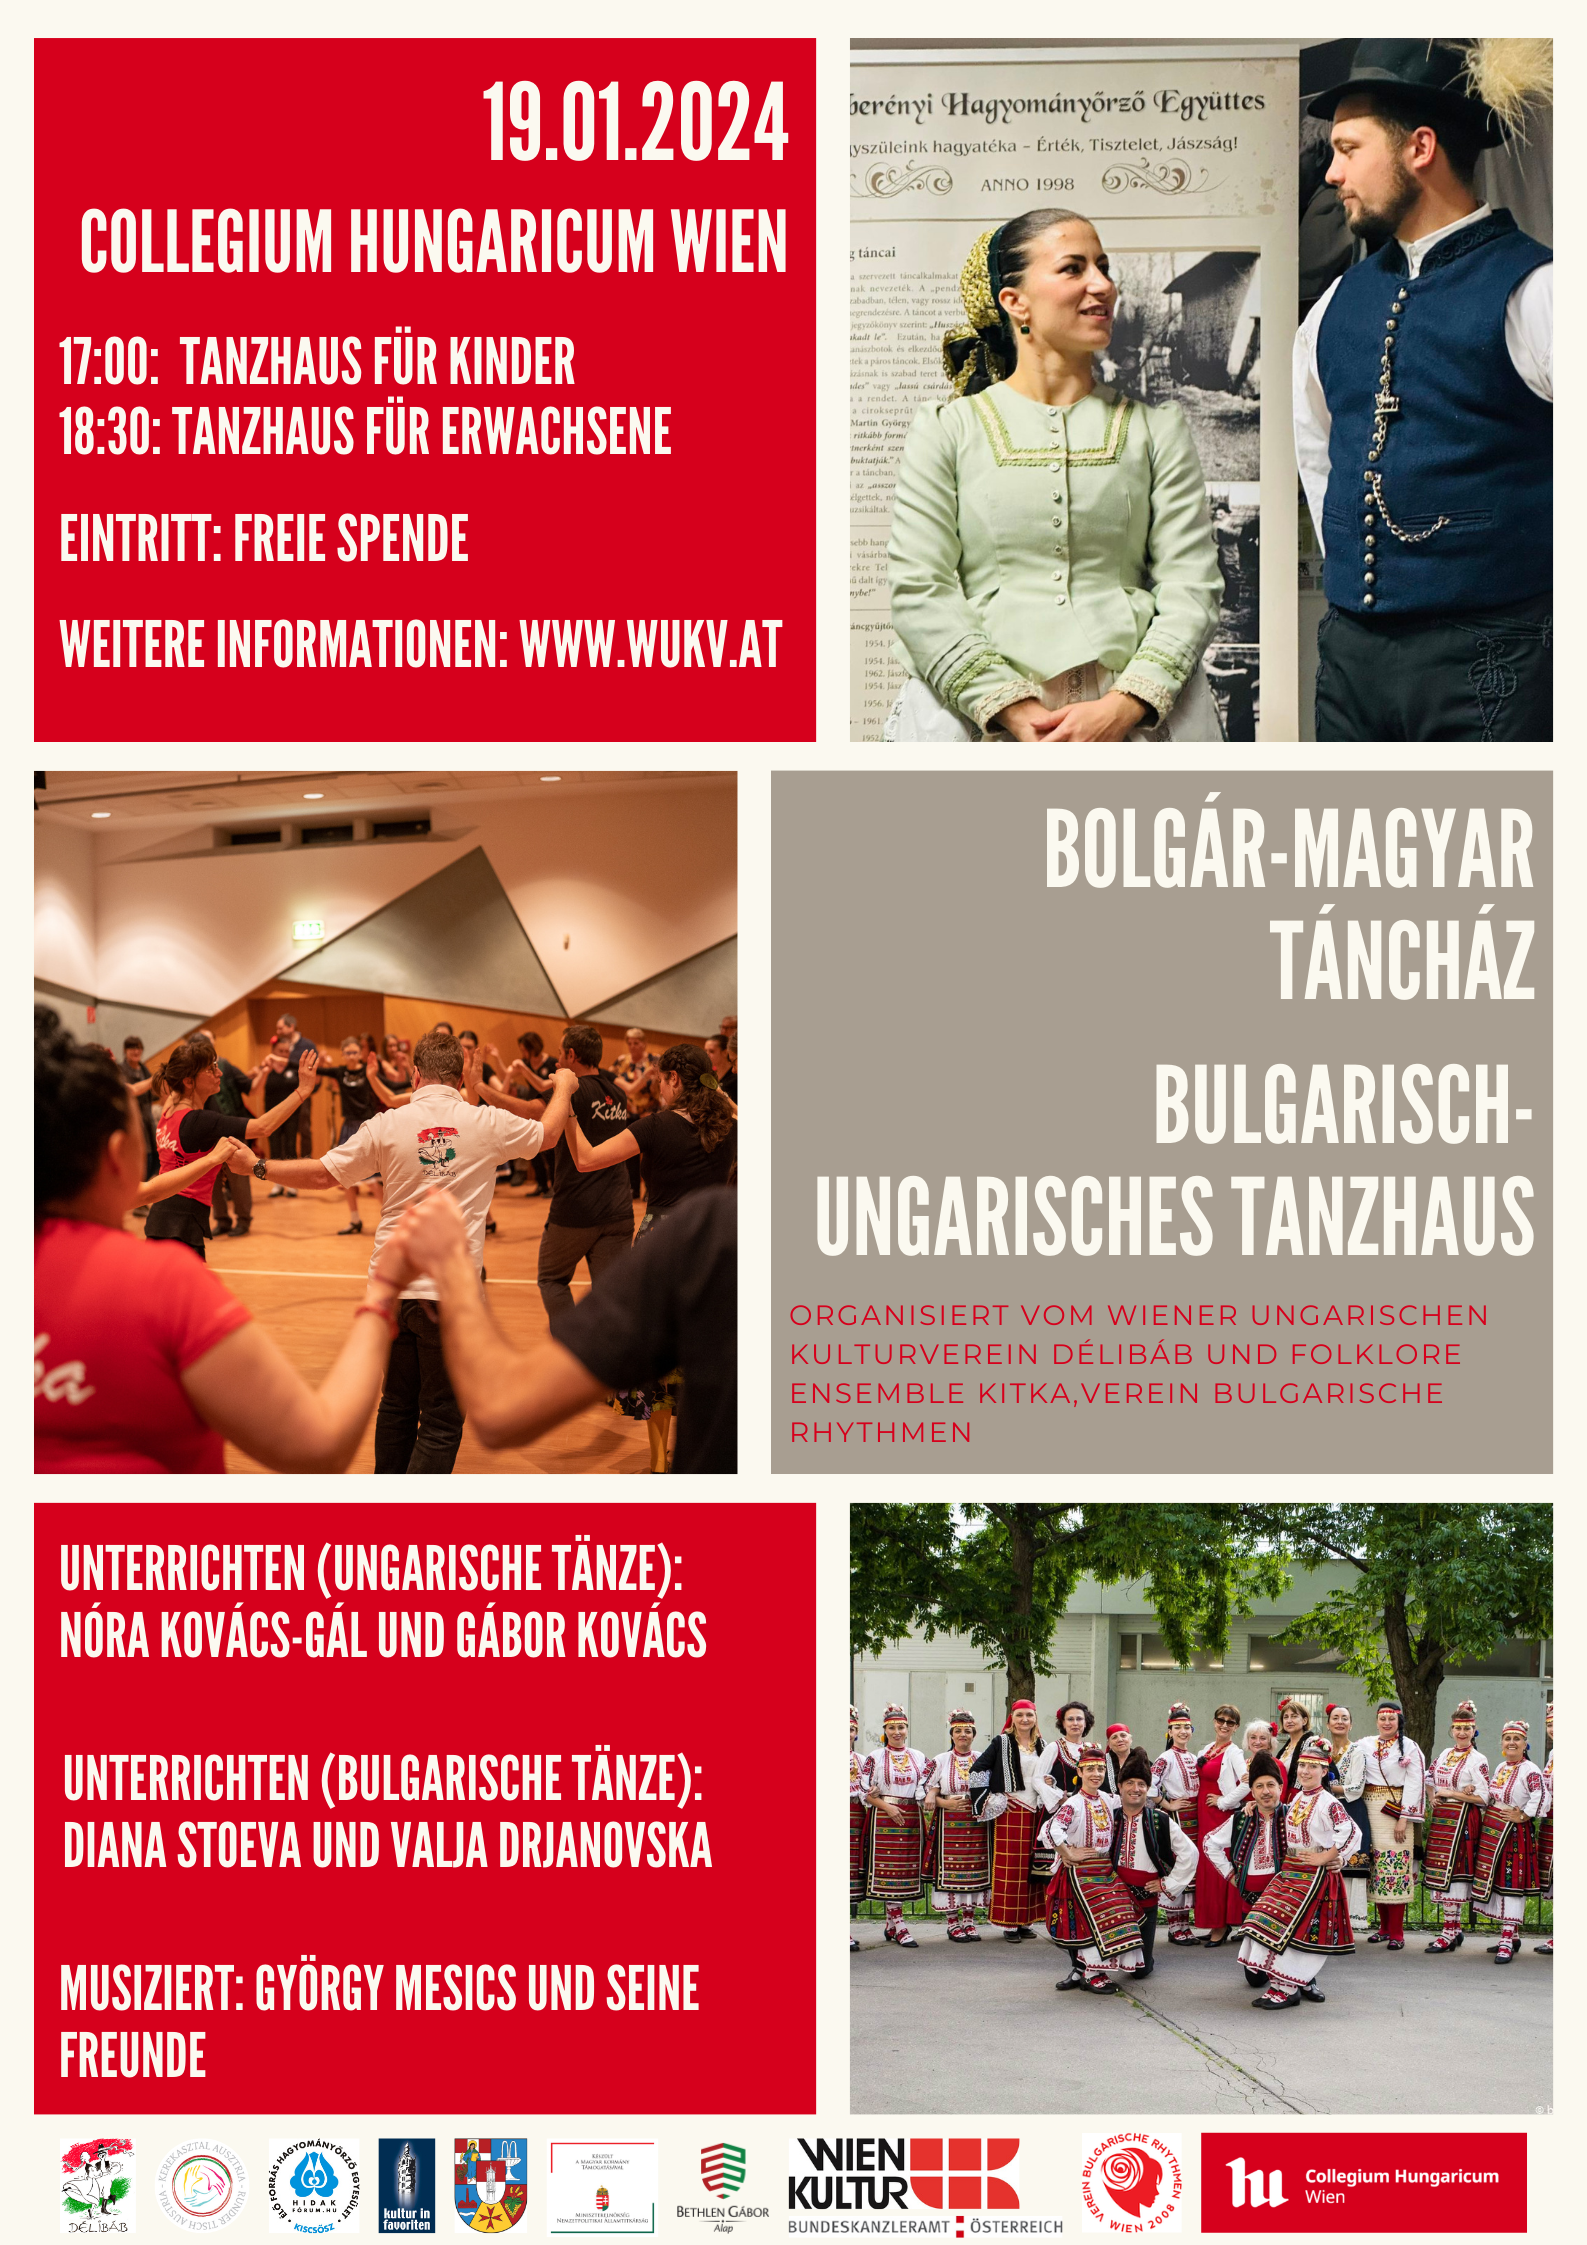 Bolgár-magyar táncház a Délibáb szervezésében